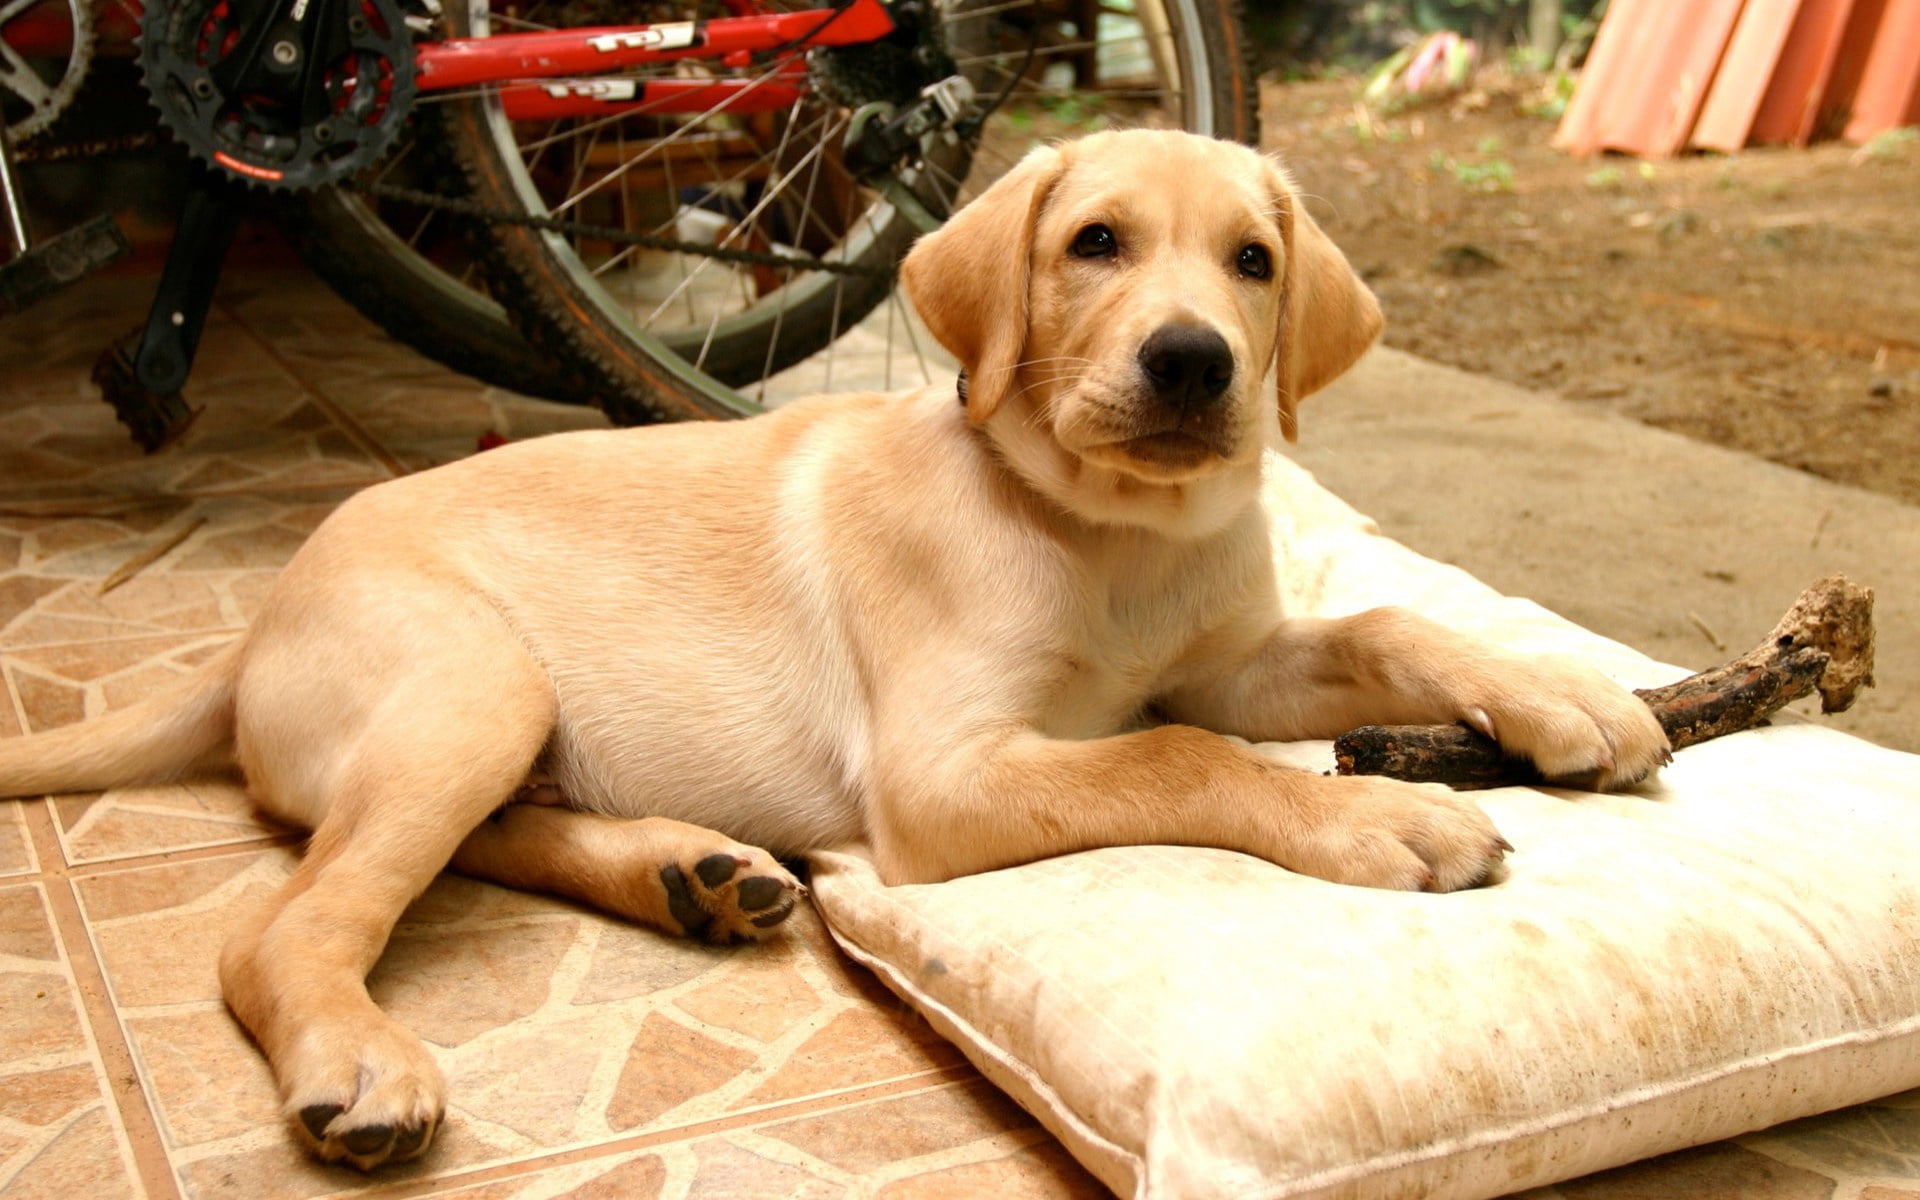 yellow Labrador Retriever lying outdoor